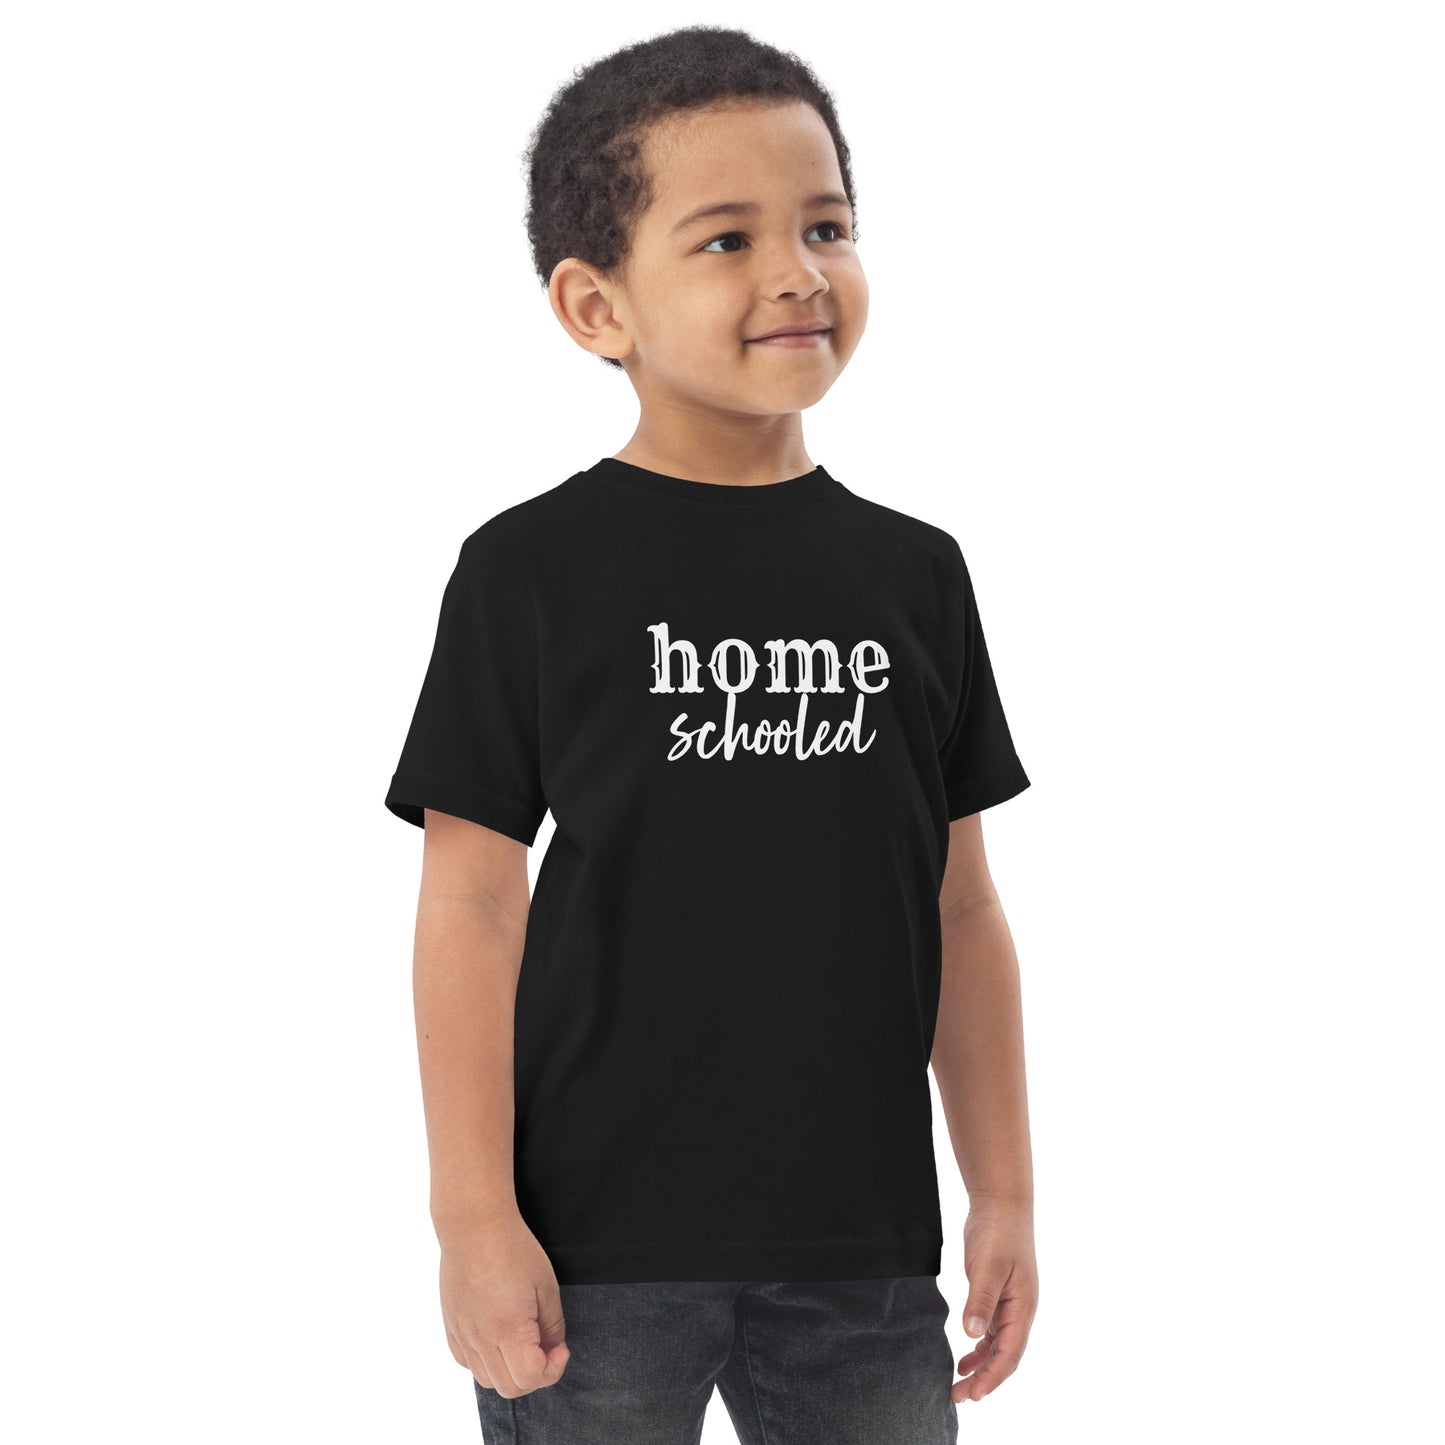 Homeschooled Toddler Short Sleeve T-Shirt Size 2-5/6